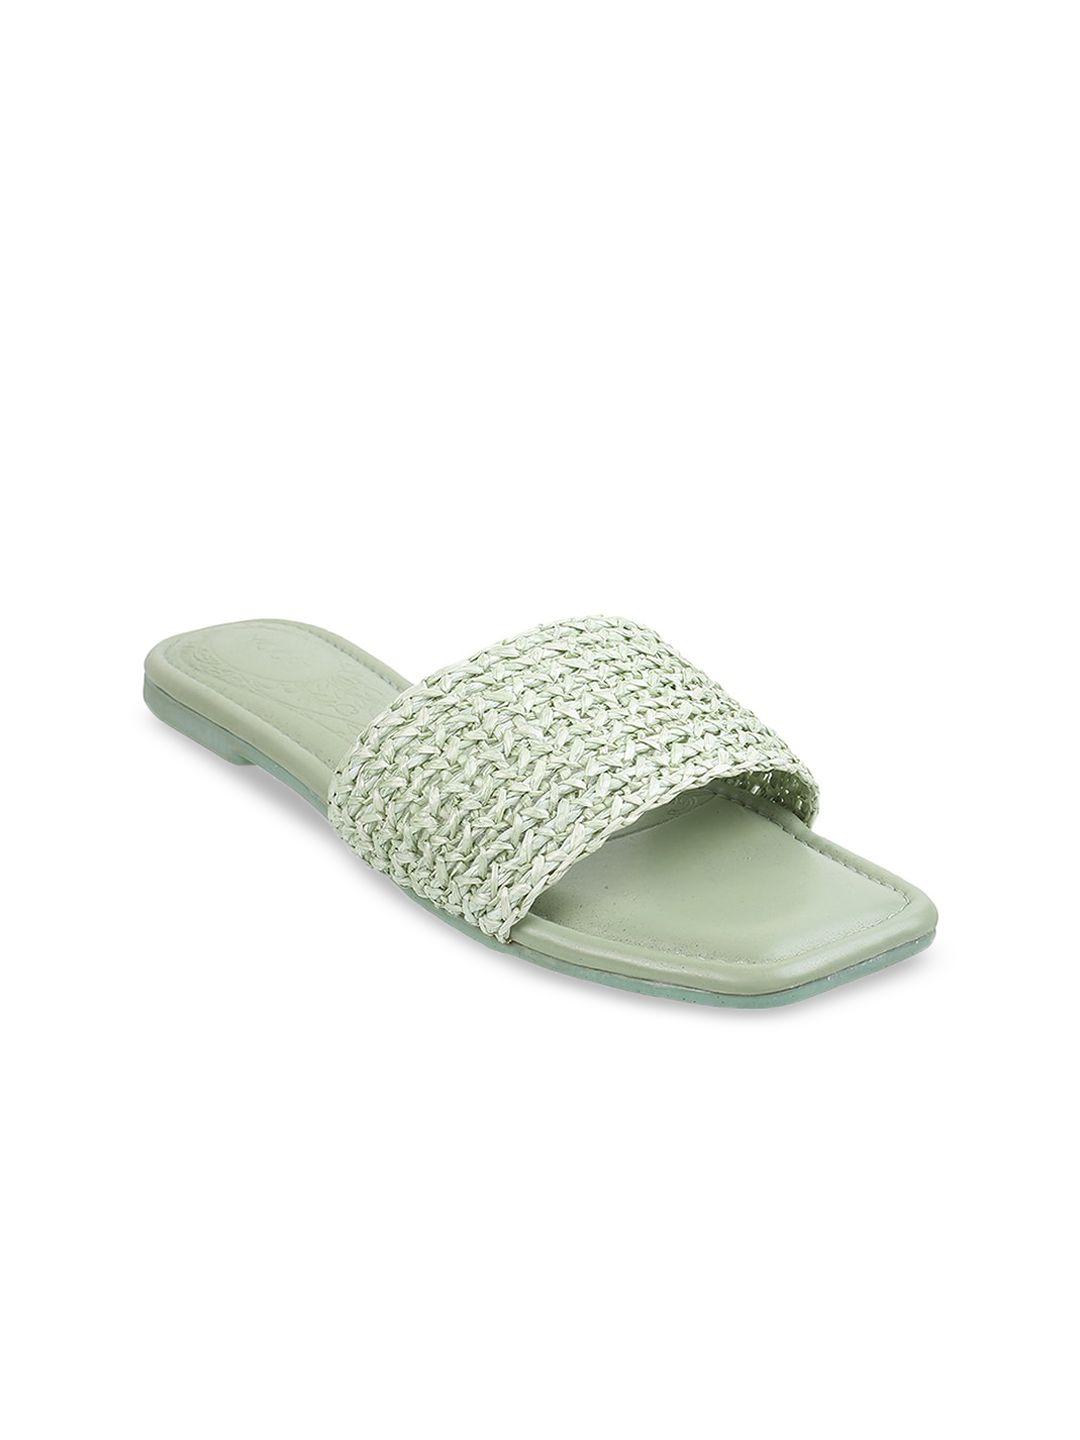 mochi textured open toe flats